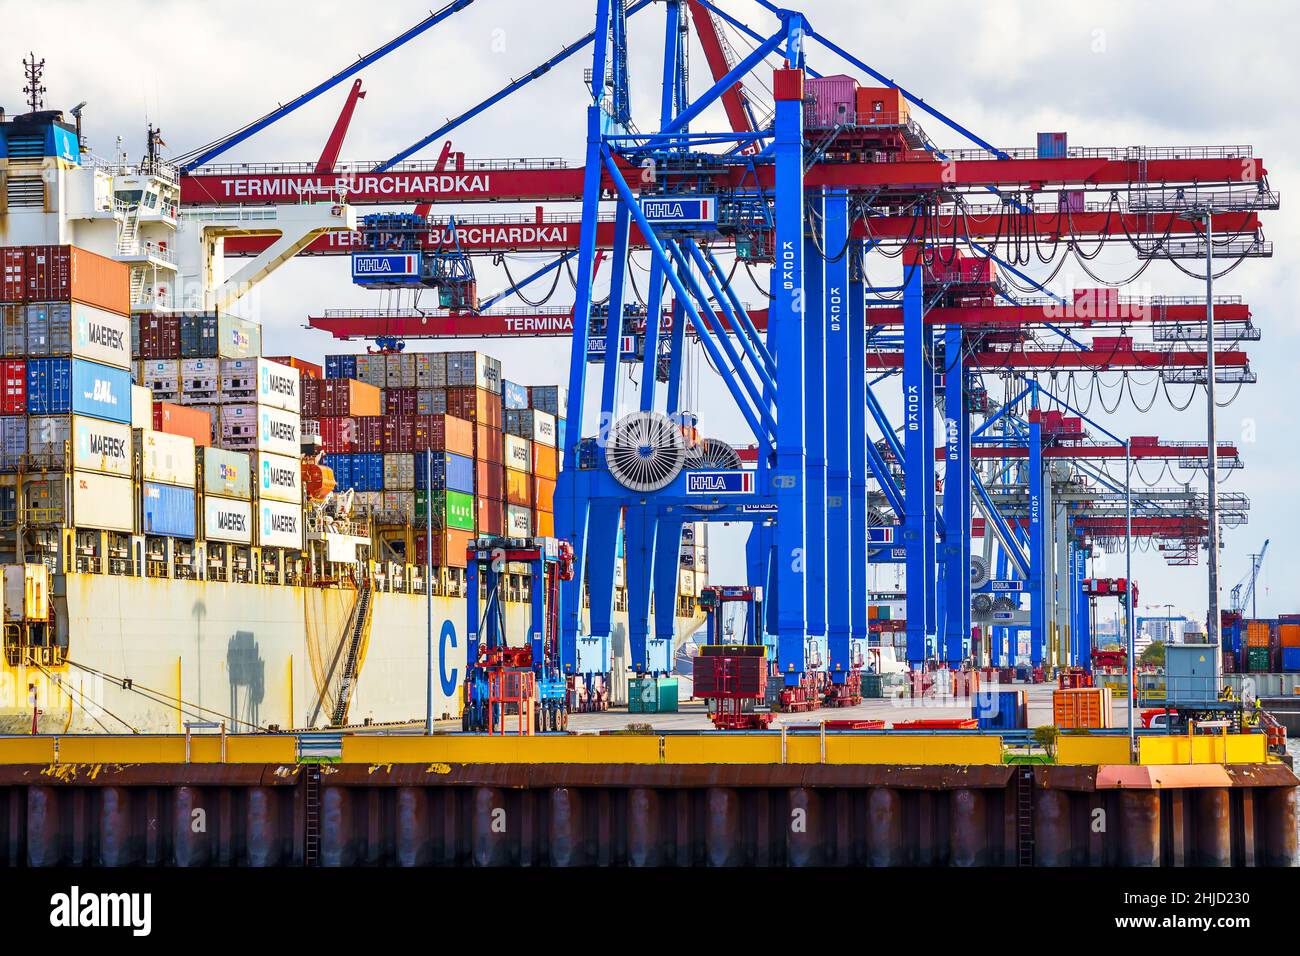 Ein Containerschiff wird tagsüber im Hamburger Hafen beladen; mit blau-rote Containerbrücken werden die container an die richtige position bugsiert Foto Stock